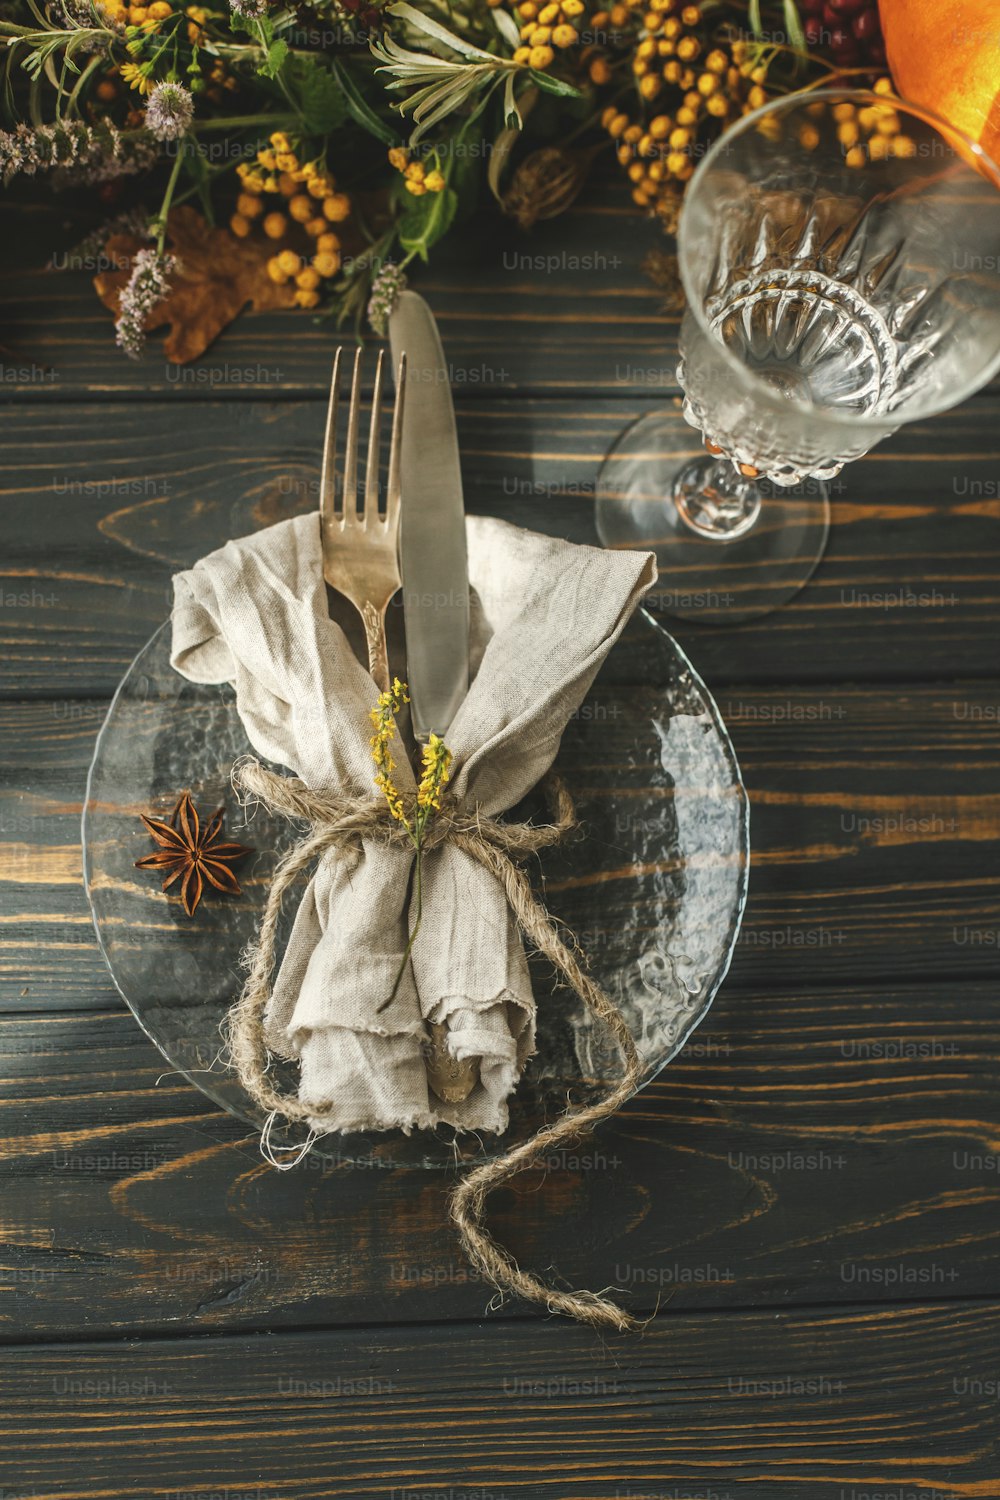 Apparecchiare la tavola della cena del Ringraziamento. Elegante piatto con posate e decorazioni autunnali, zucca, rami naturali e fiori autunnali su tavola rustica. Catering per matrimoni autunnali